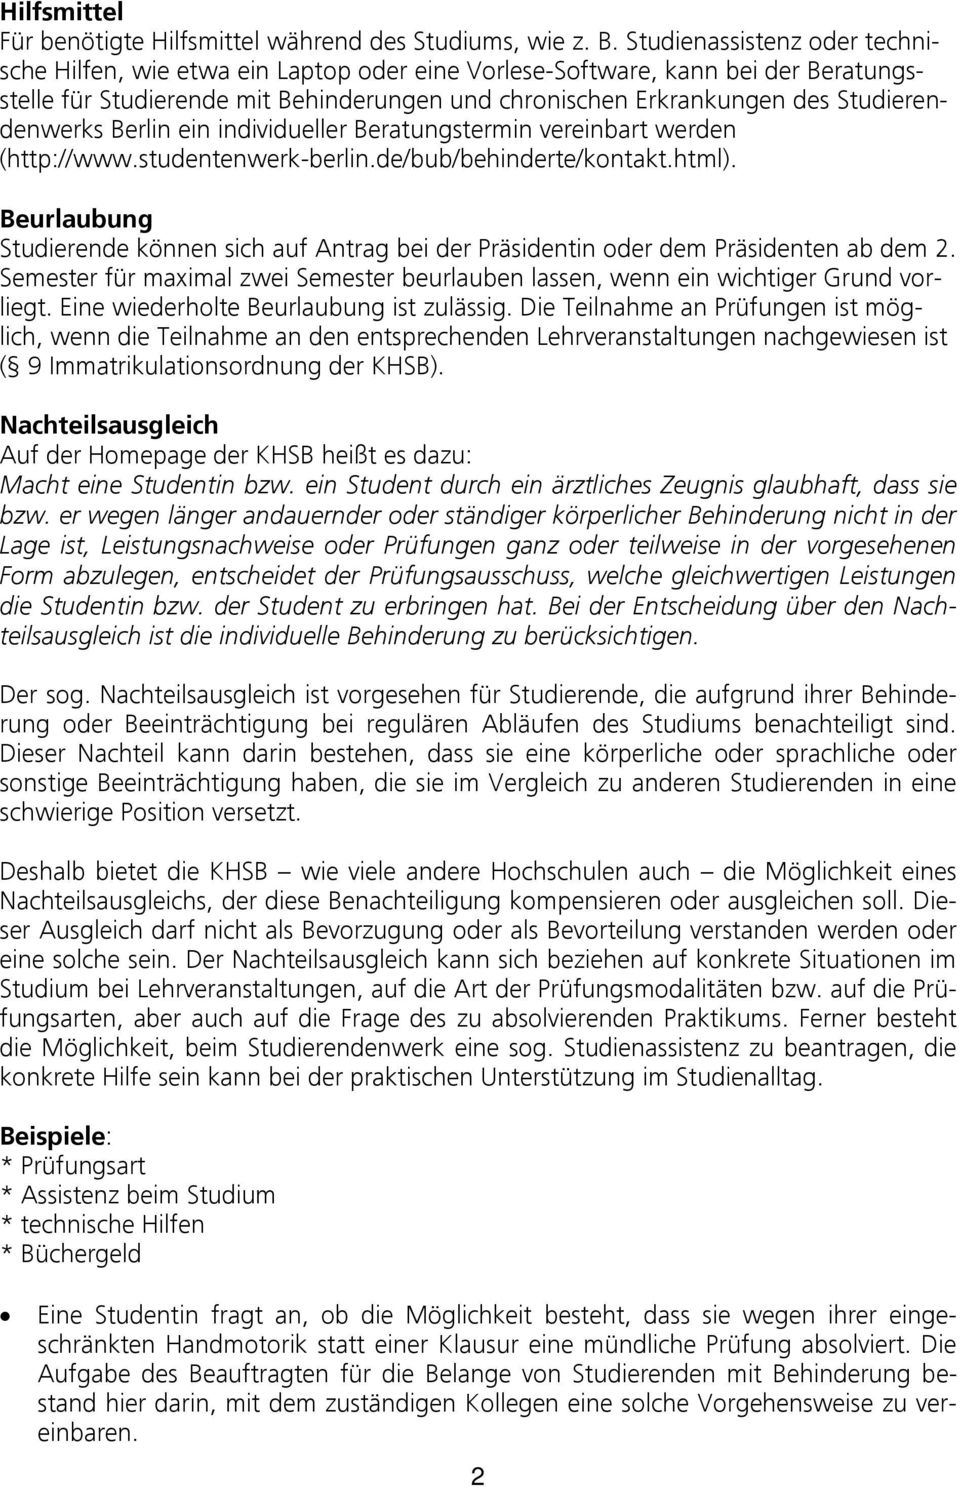 Studierendenwerks Berlin ein individueller Beratungstermin vereinbart werden (http://www.studentenwerk-berlin.de/bub/behinderte/kontakt.html).